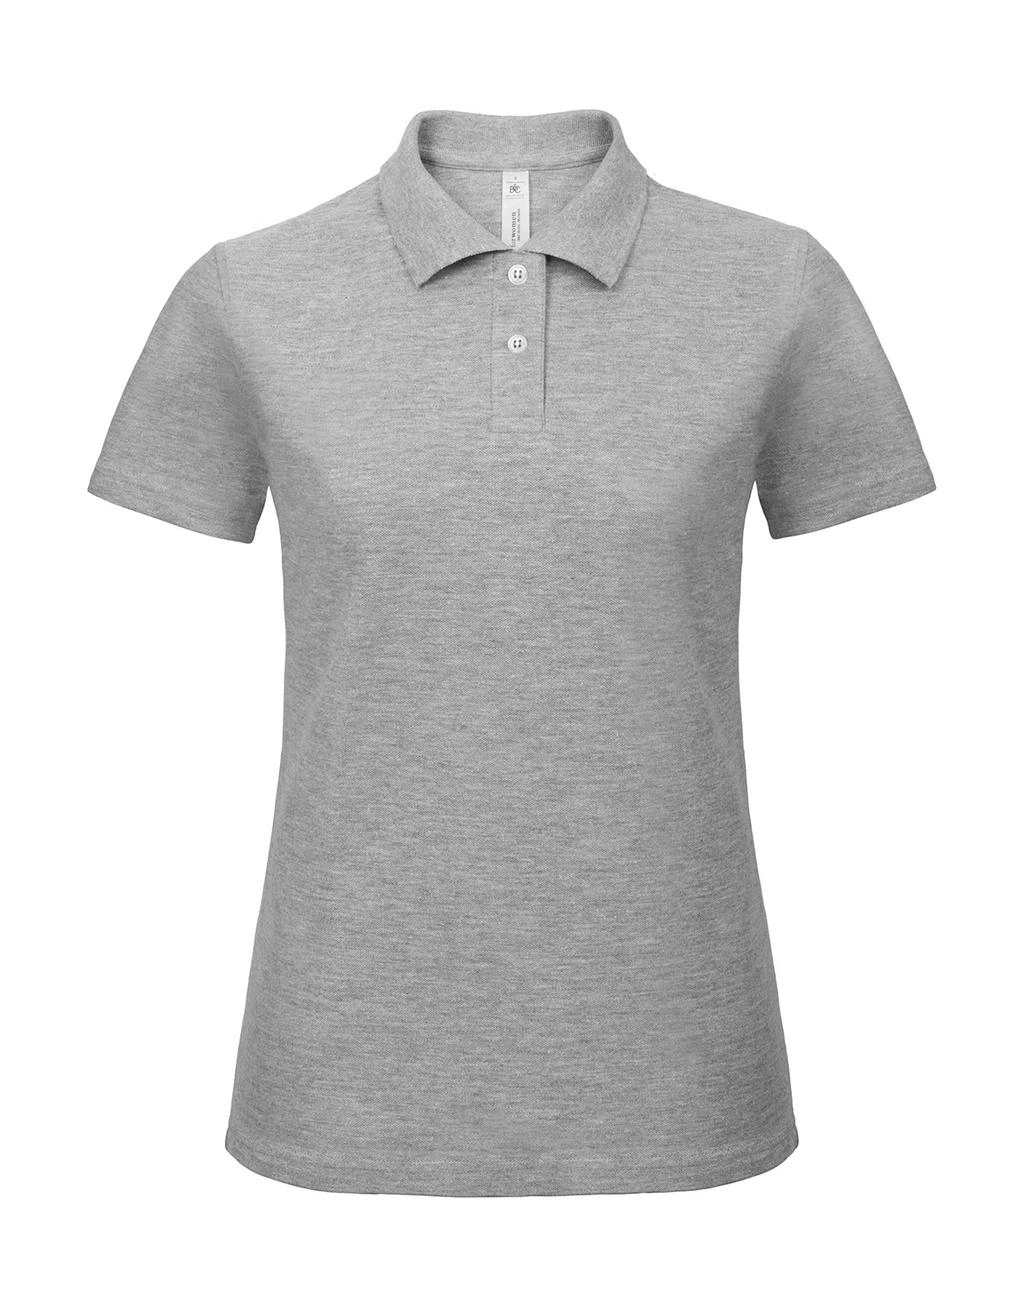 ID.001/women Piqué Polo Shirt zum Besticken und Bedrucken in der Farbe Heather Grey mit Ihren Logo, Schriftzug oder Motiv.